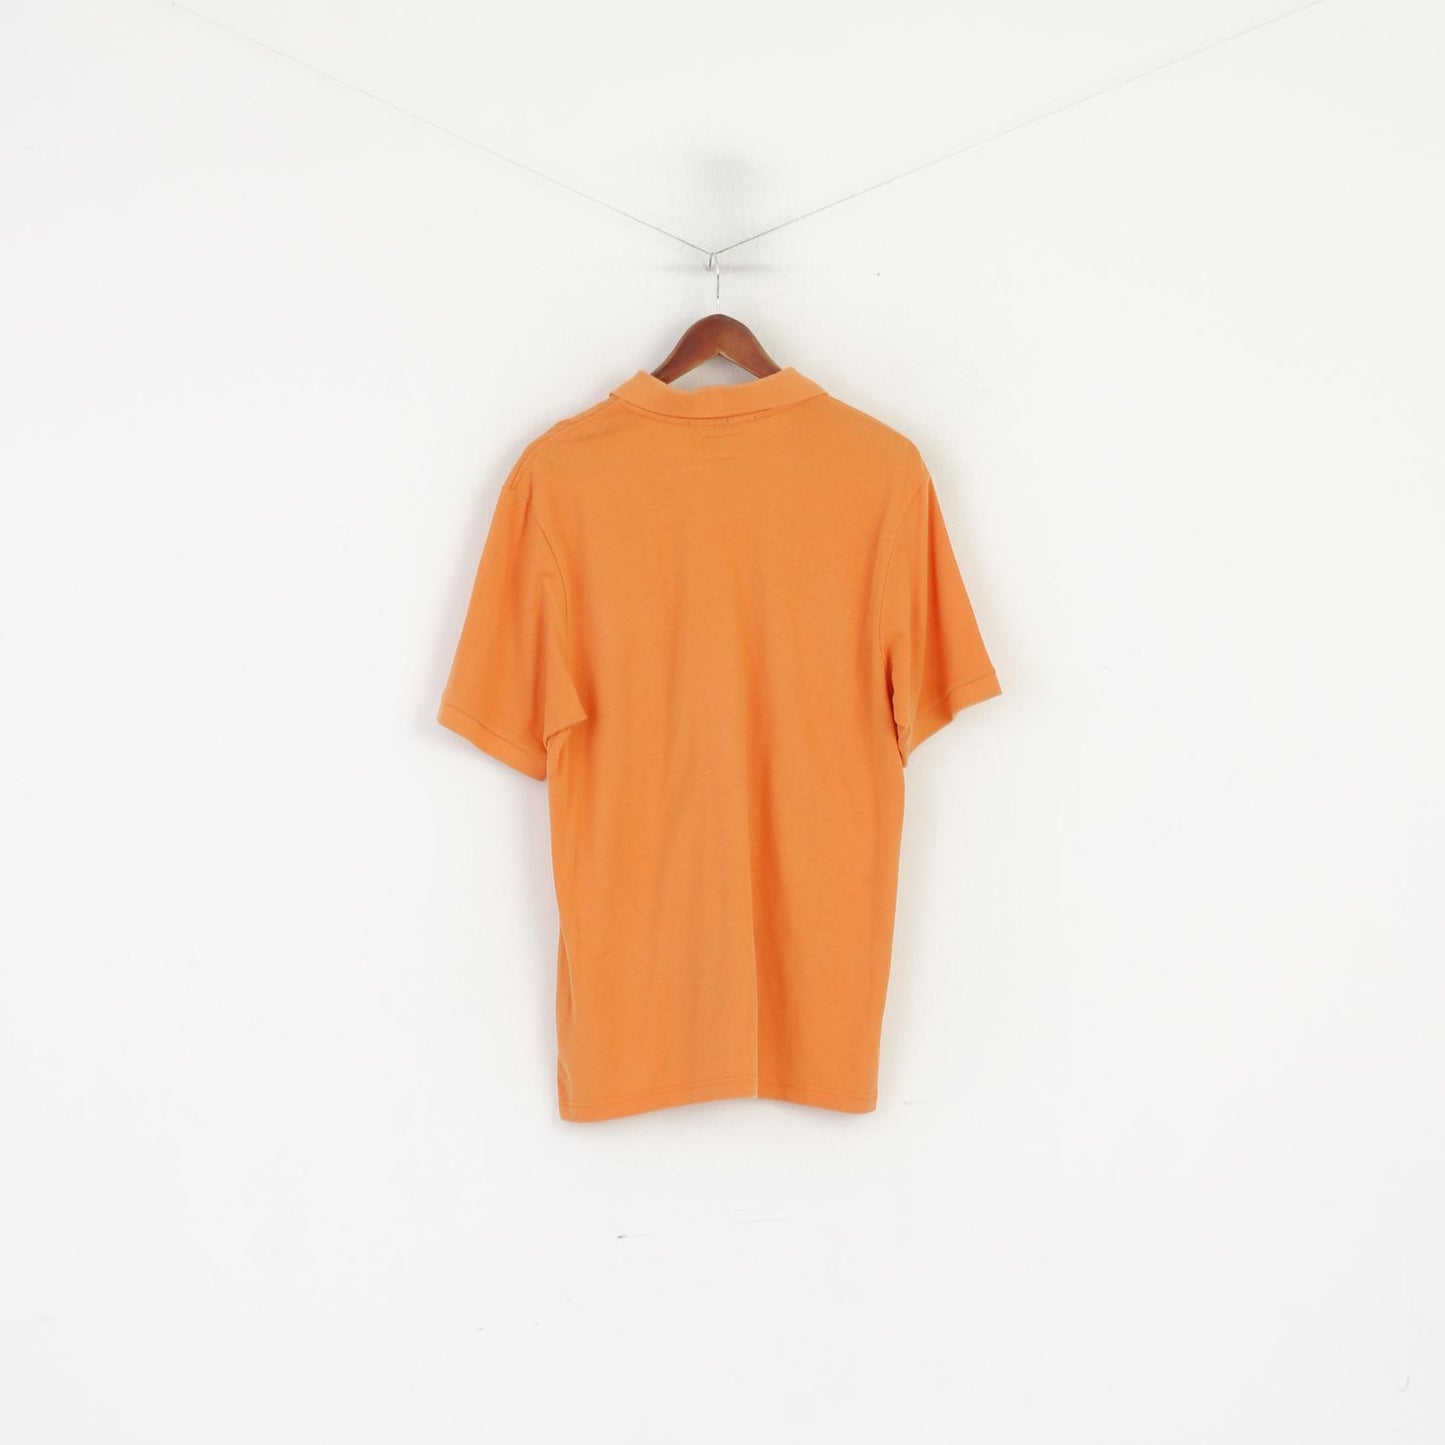 Champion Men L Polo Shirt Orange Cotton Easy Fit Vintage Plain Classic Summer Top